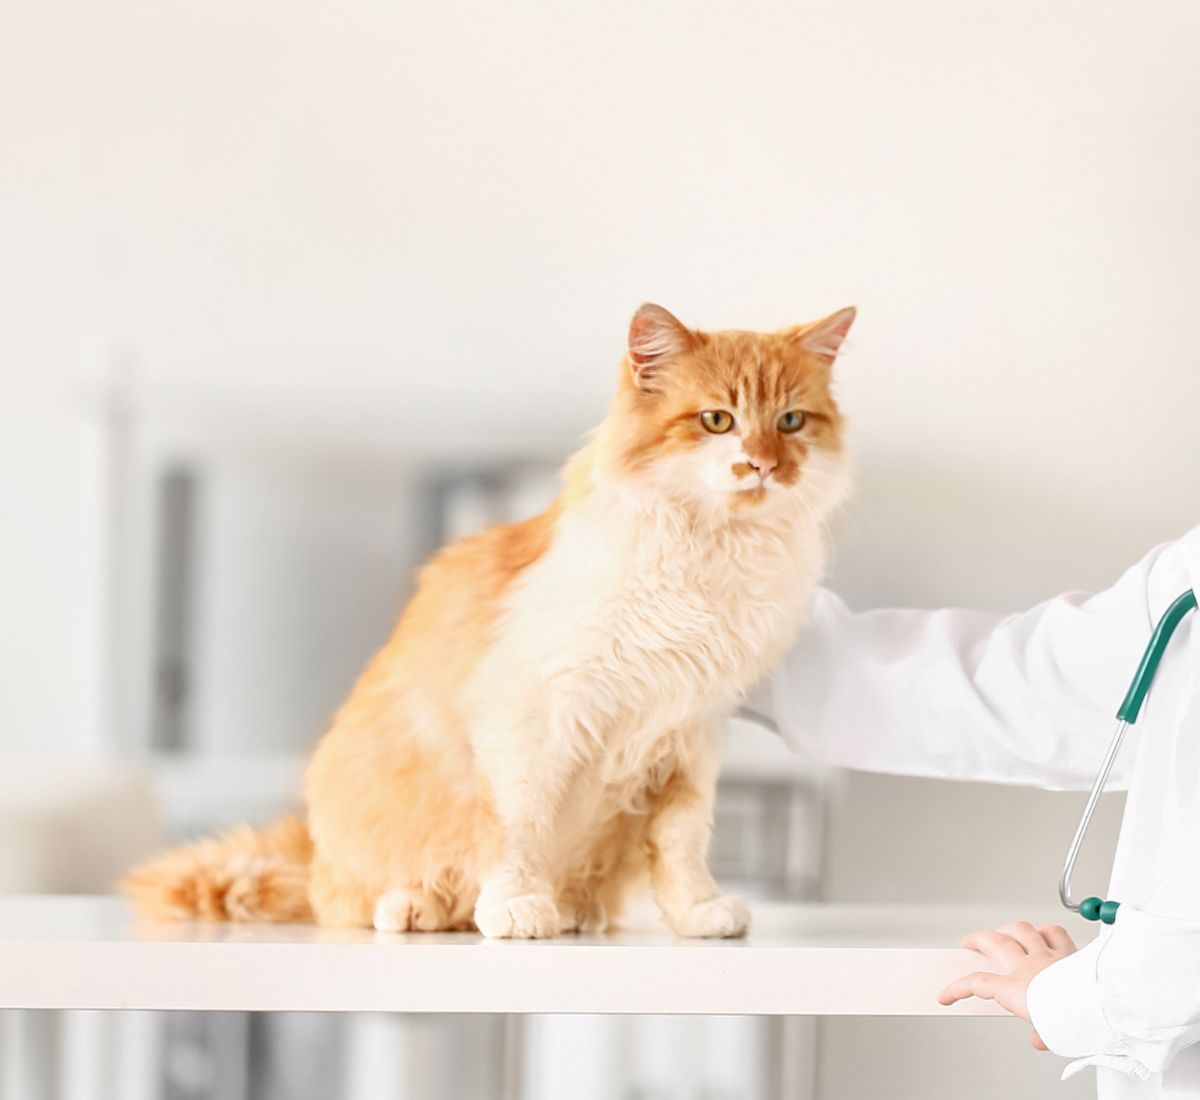 Veterinarian examining cat in clinic